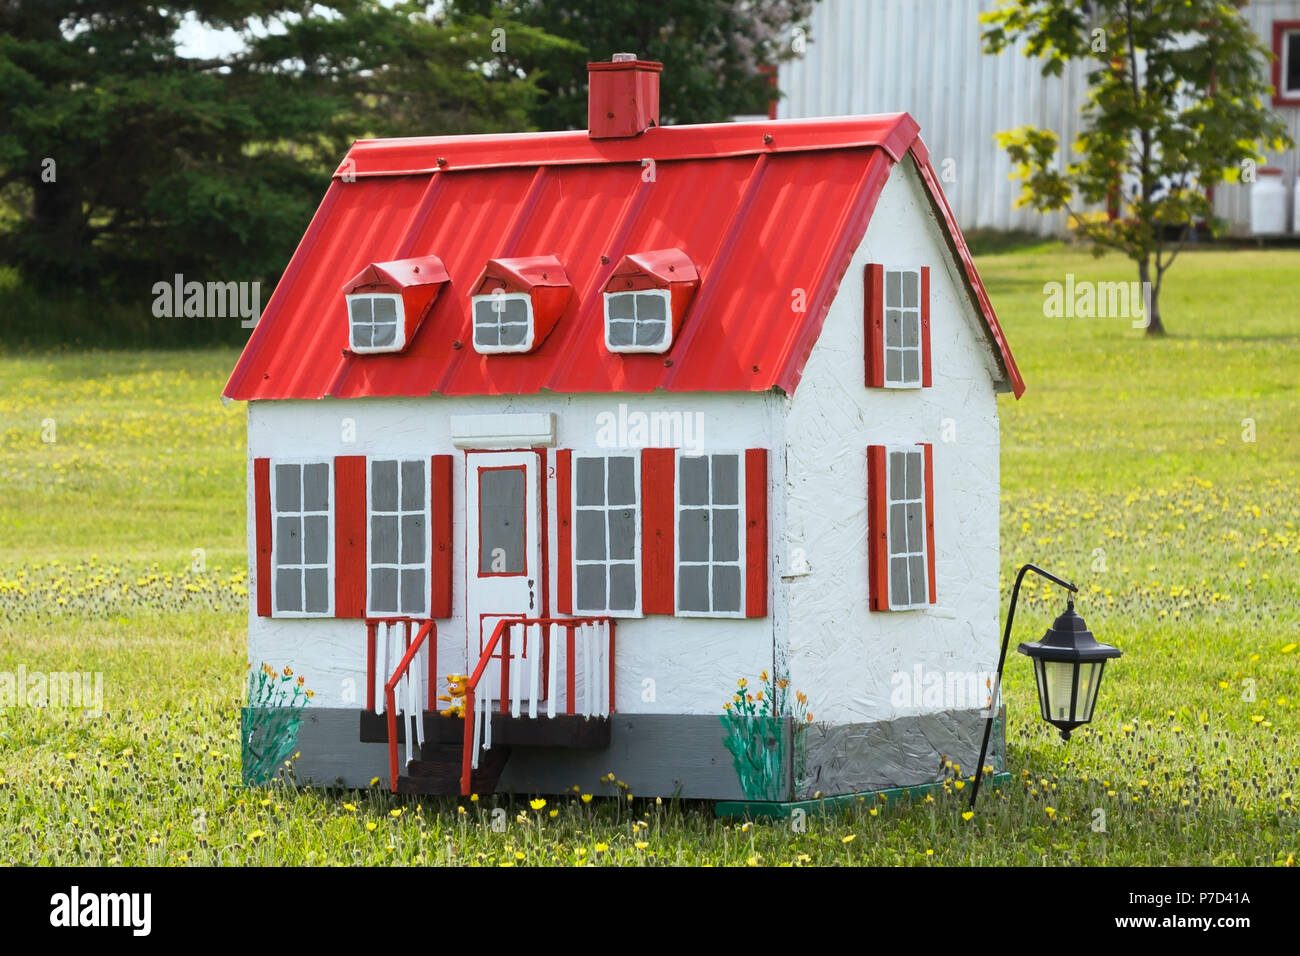 Blanc avec garniture rouge reproduction miniature d'une vieille maison de style cottage Canadiana façade dans un champ de fleurs de pissenlit jaune Banque D'Images